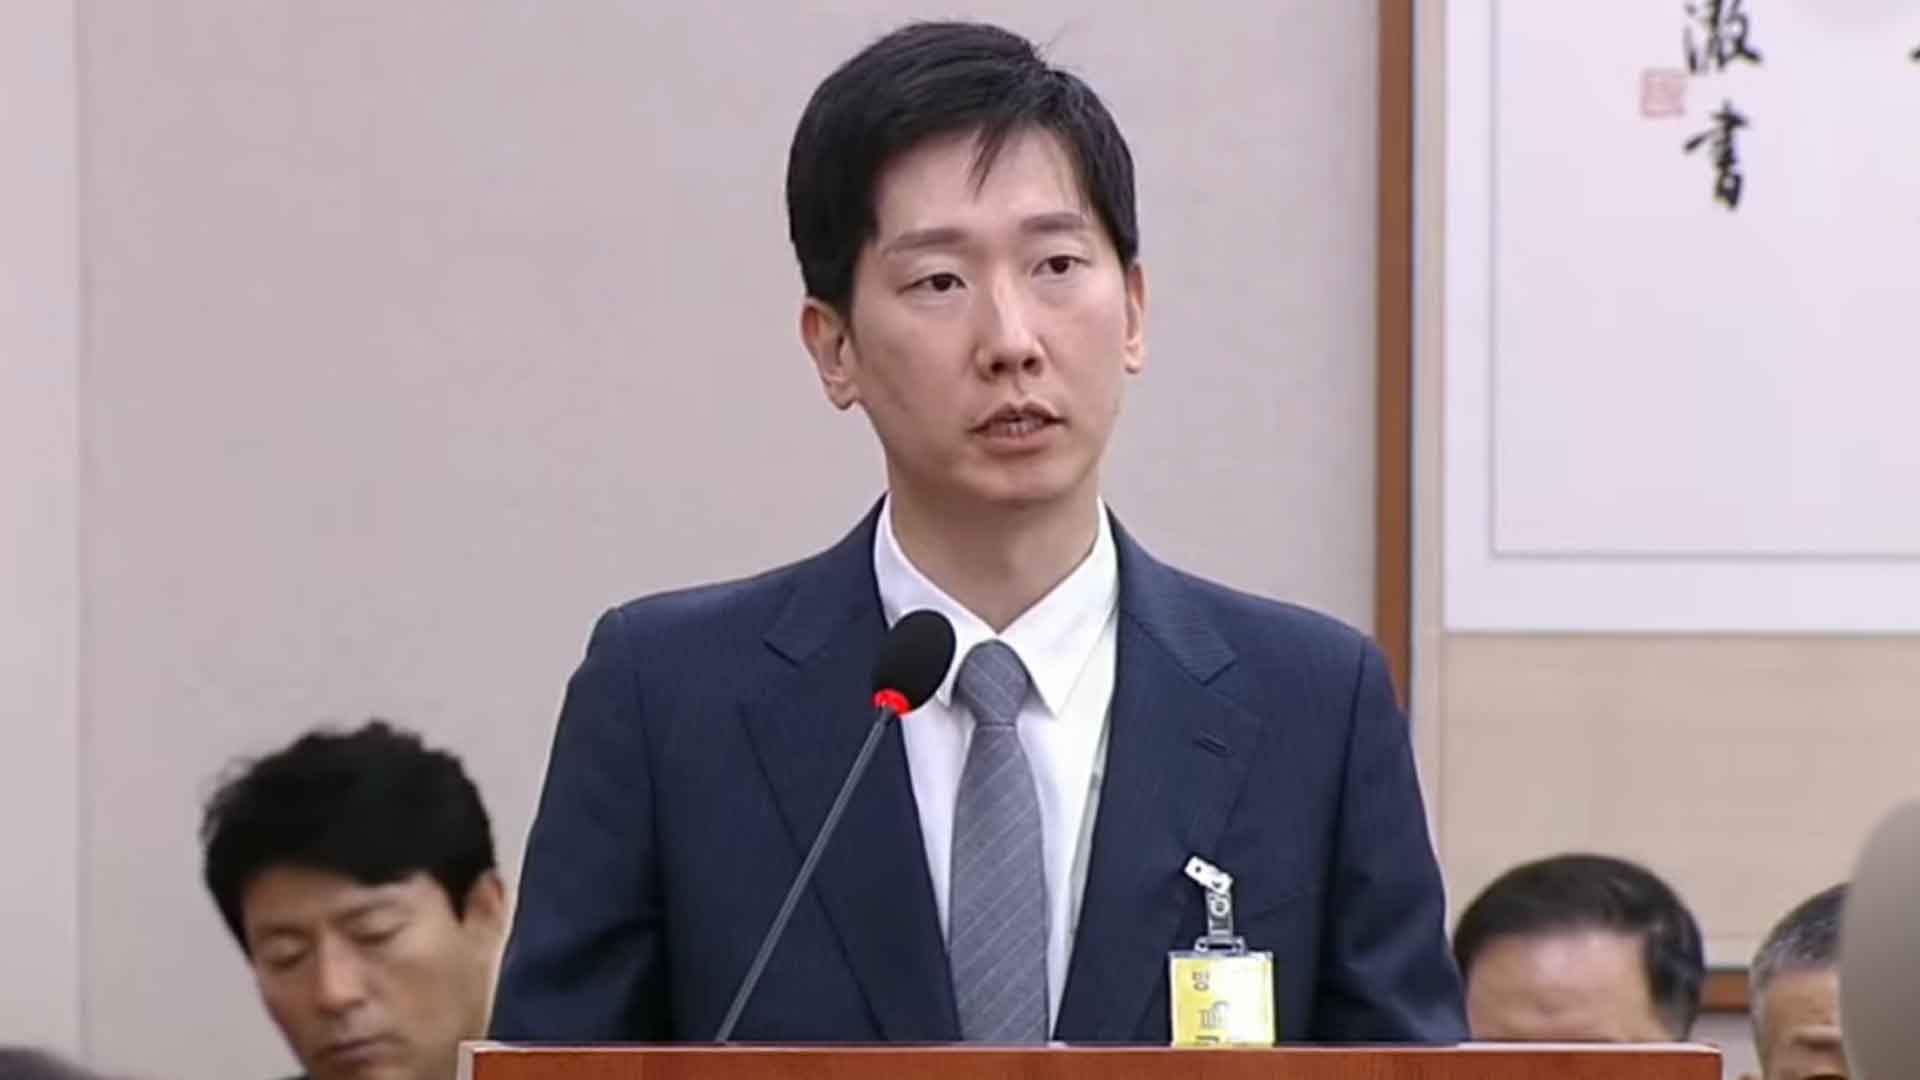 임성근 구명 로비 의혹 제보 김규현 변호사, 참고인에서 증인으로 변경